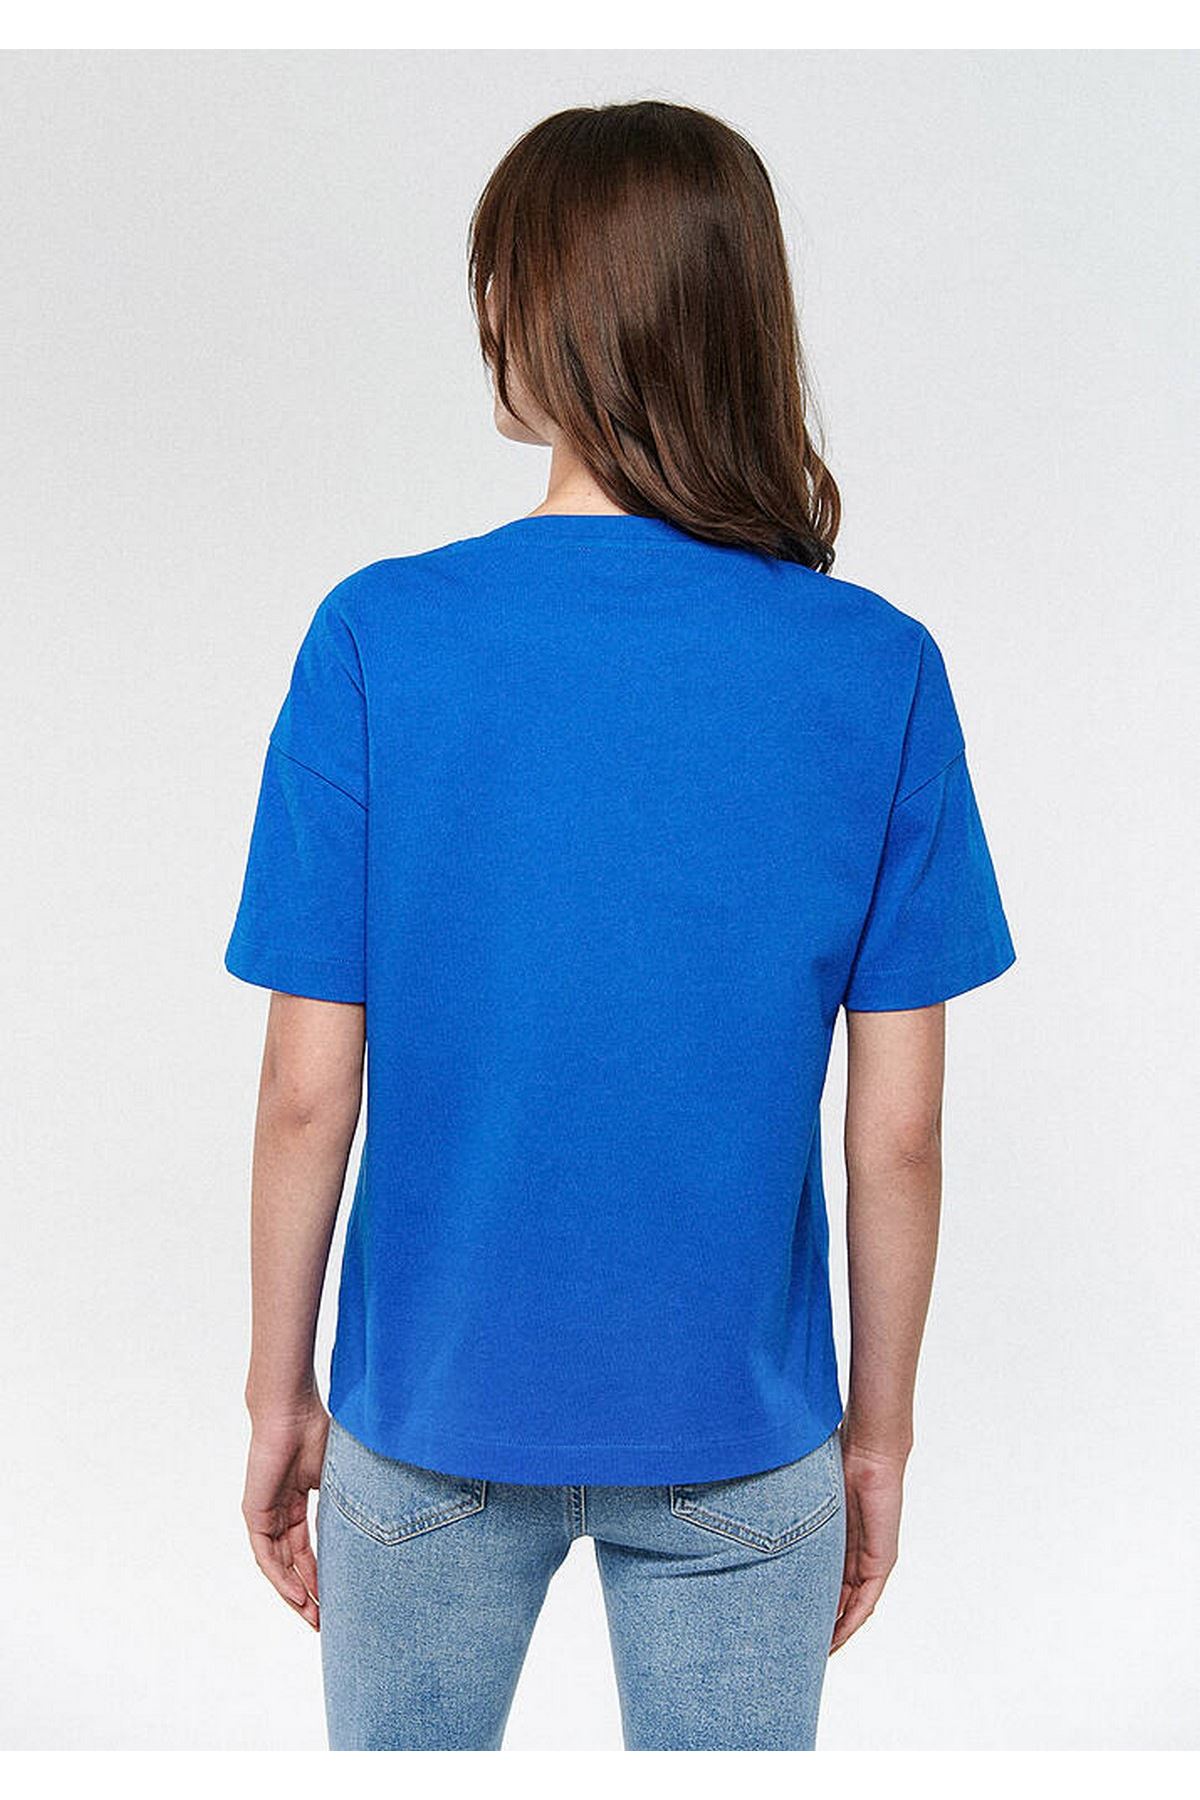 Penye Mavi Kadın Mavi Tişört - M1611221-81347